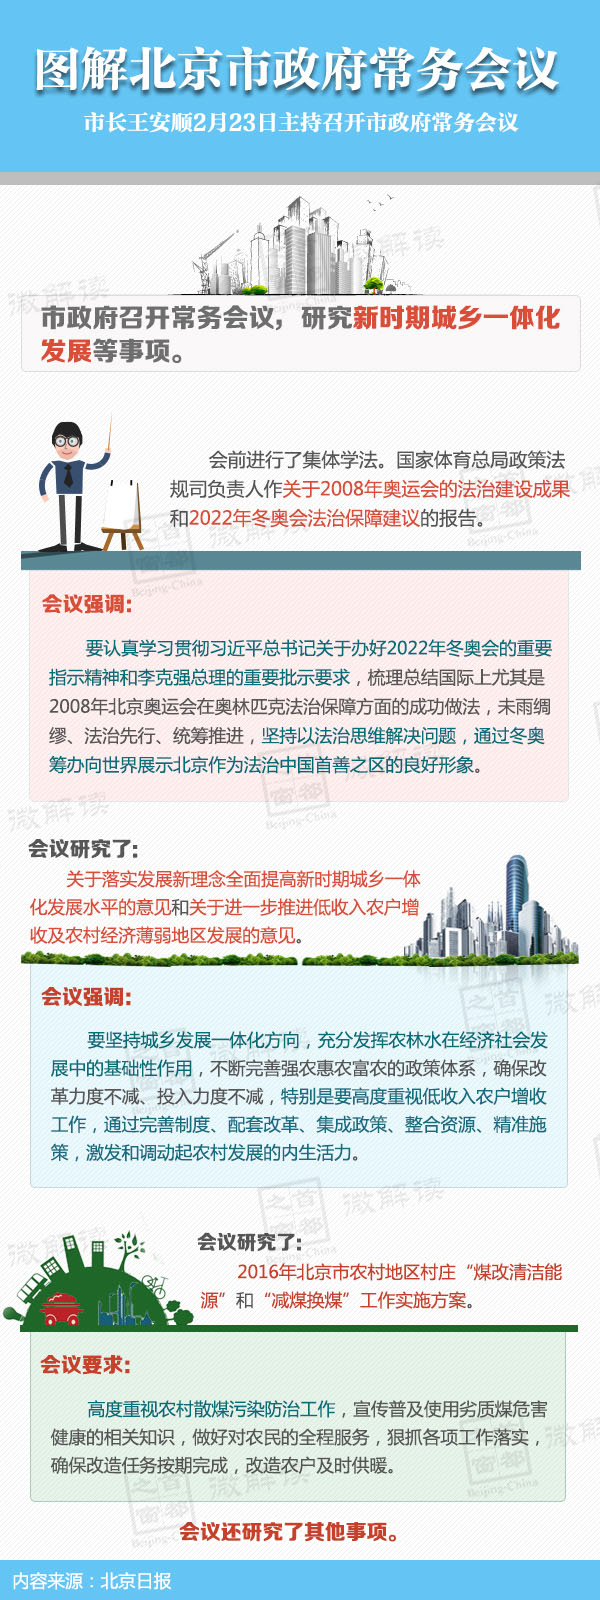 图解2016年2月23日北京市政府常务会议